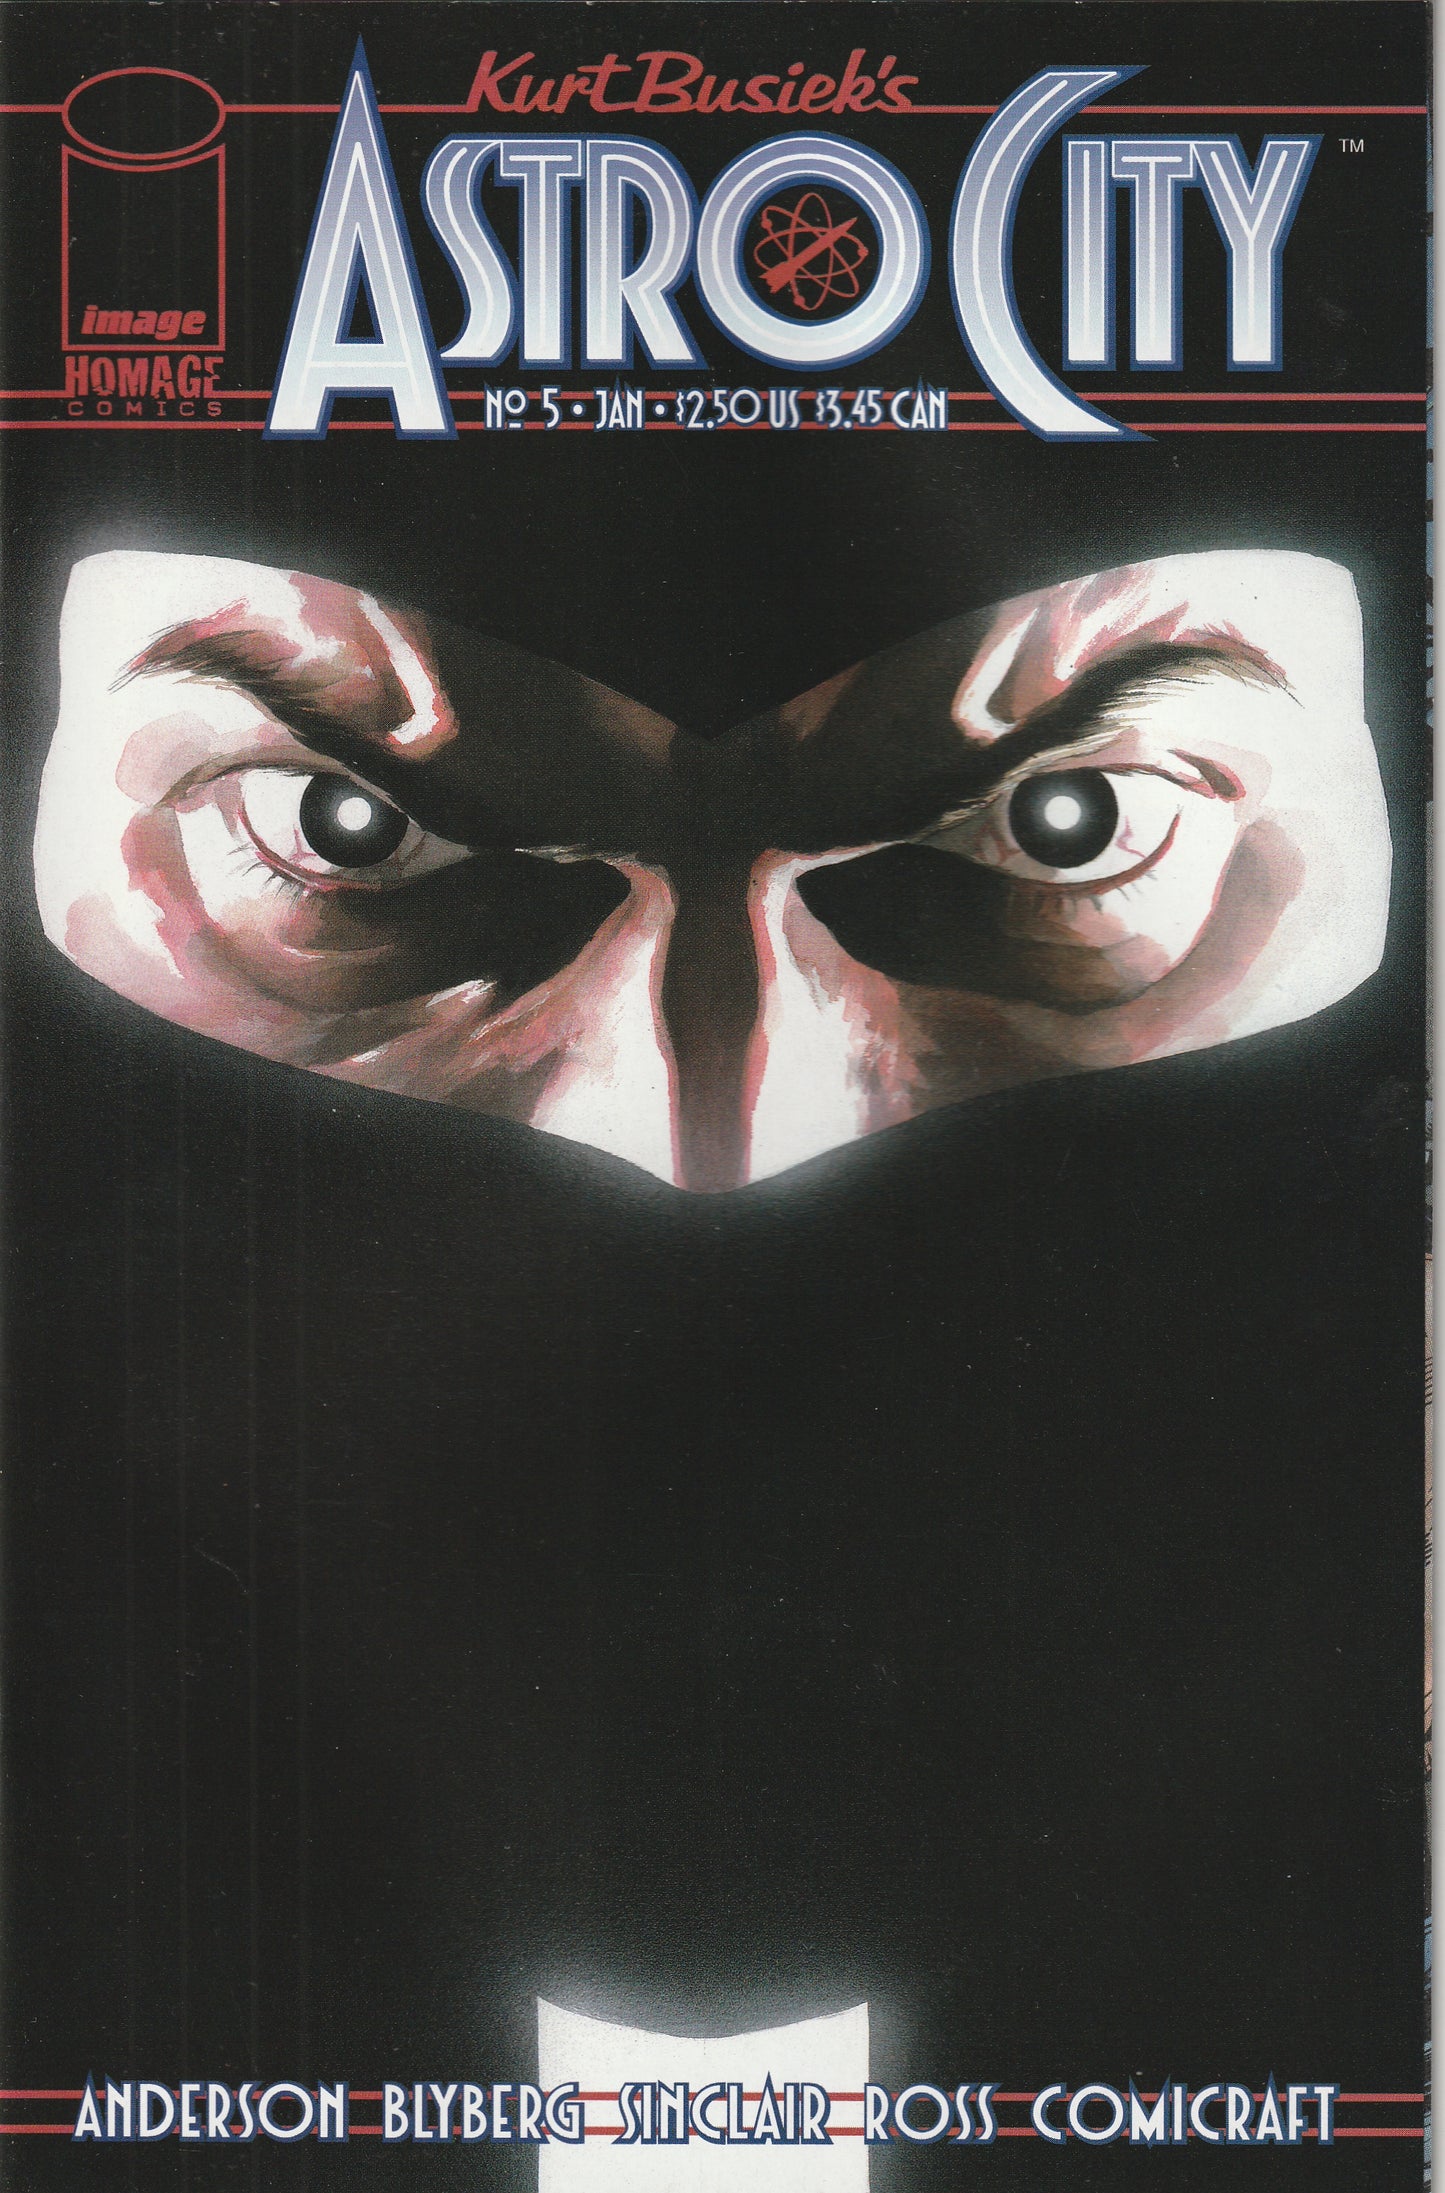 Kurt Busiek's Astro City #5 (Vol 2, 1997) - Alex Ross cover